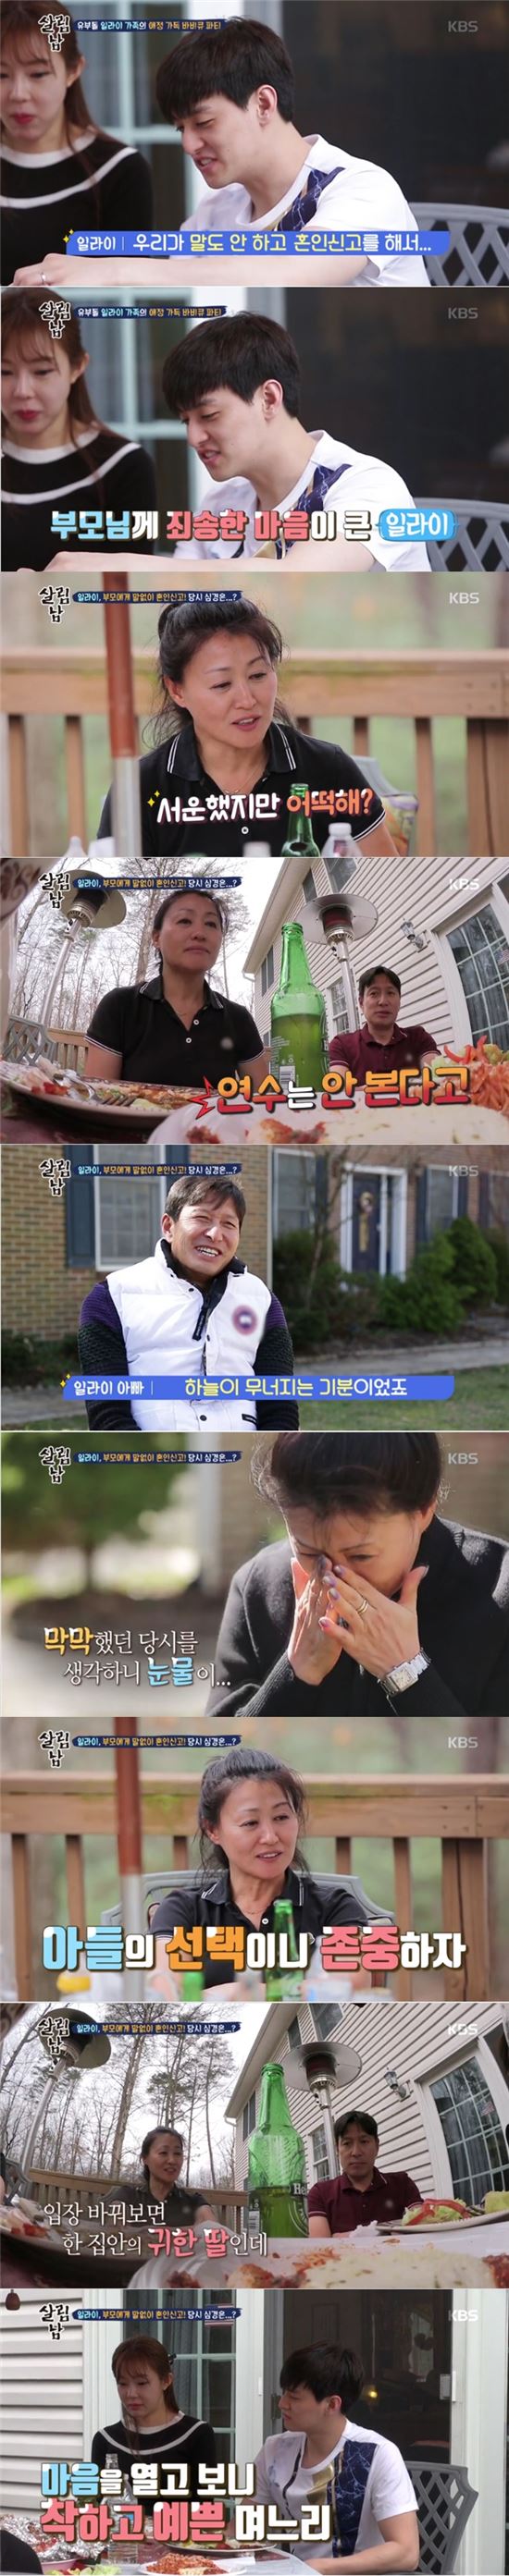 일라이가 부모님께 말없이 혼인신고 했던 과거에 대해 미안함을 전했다./사진=KBS2 '살림하는 남자들2' 방송화면 캡처